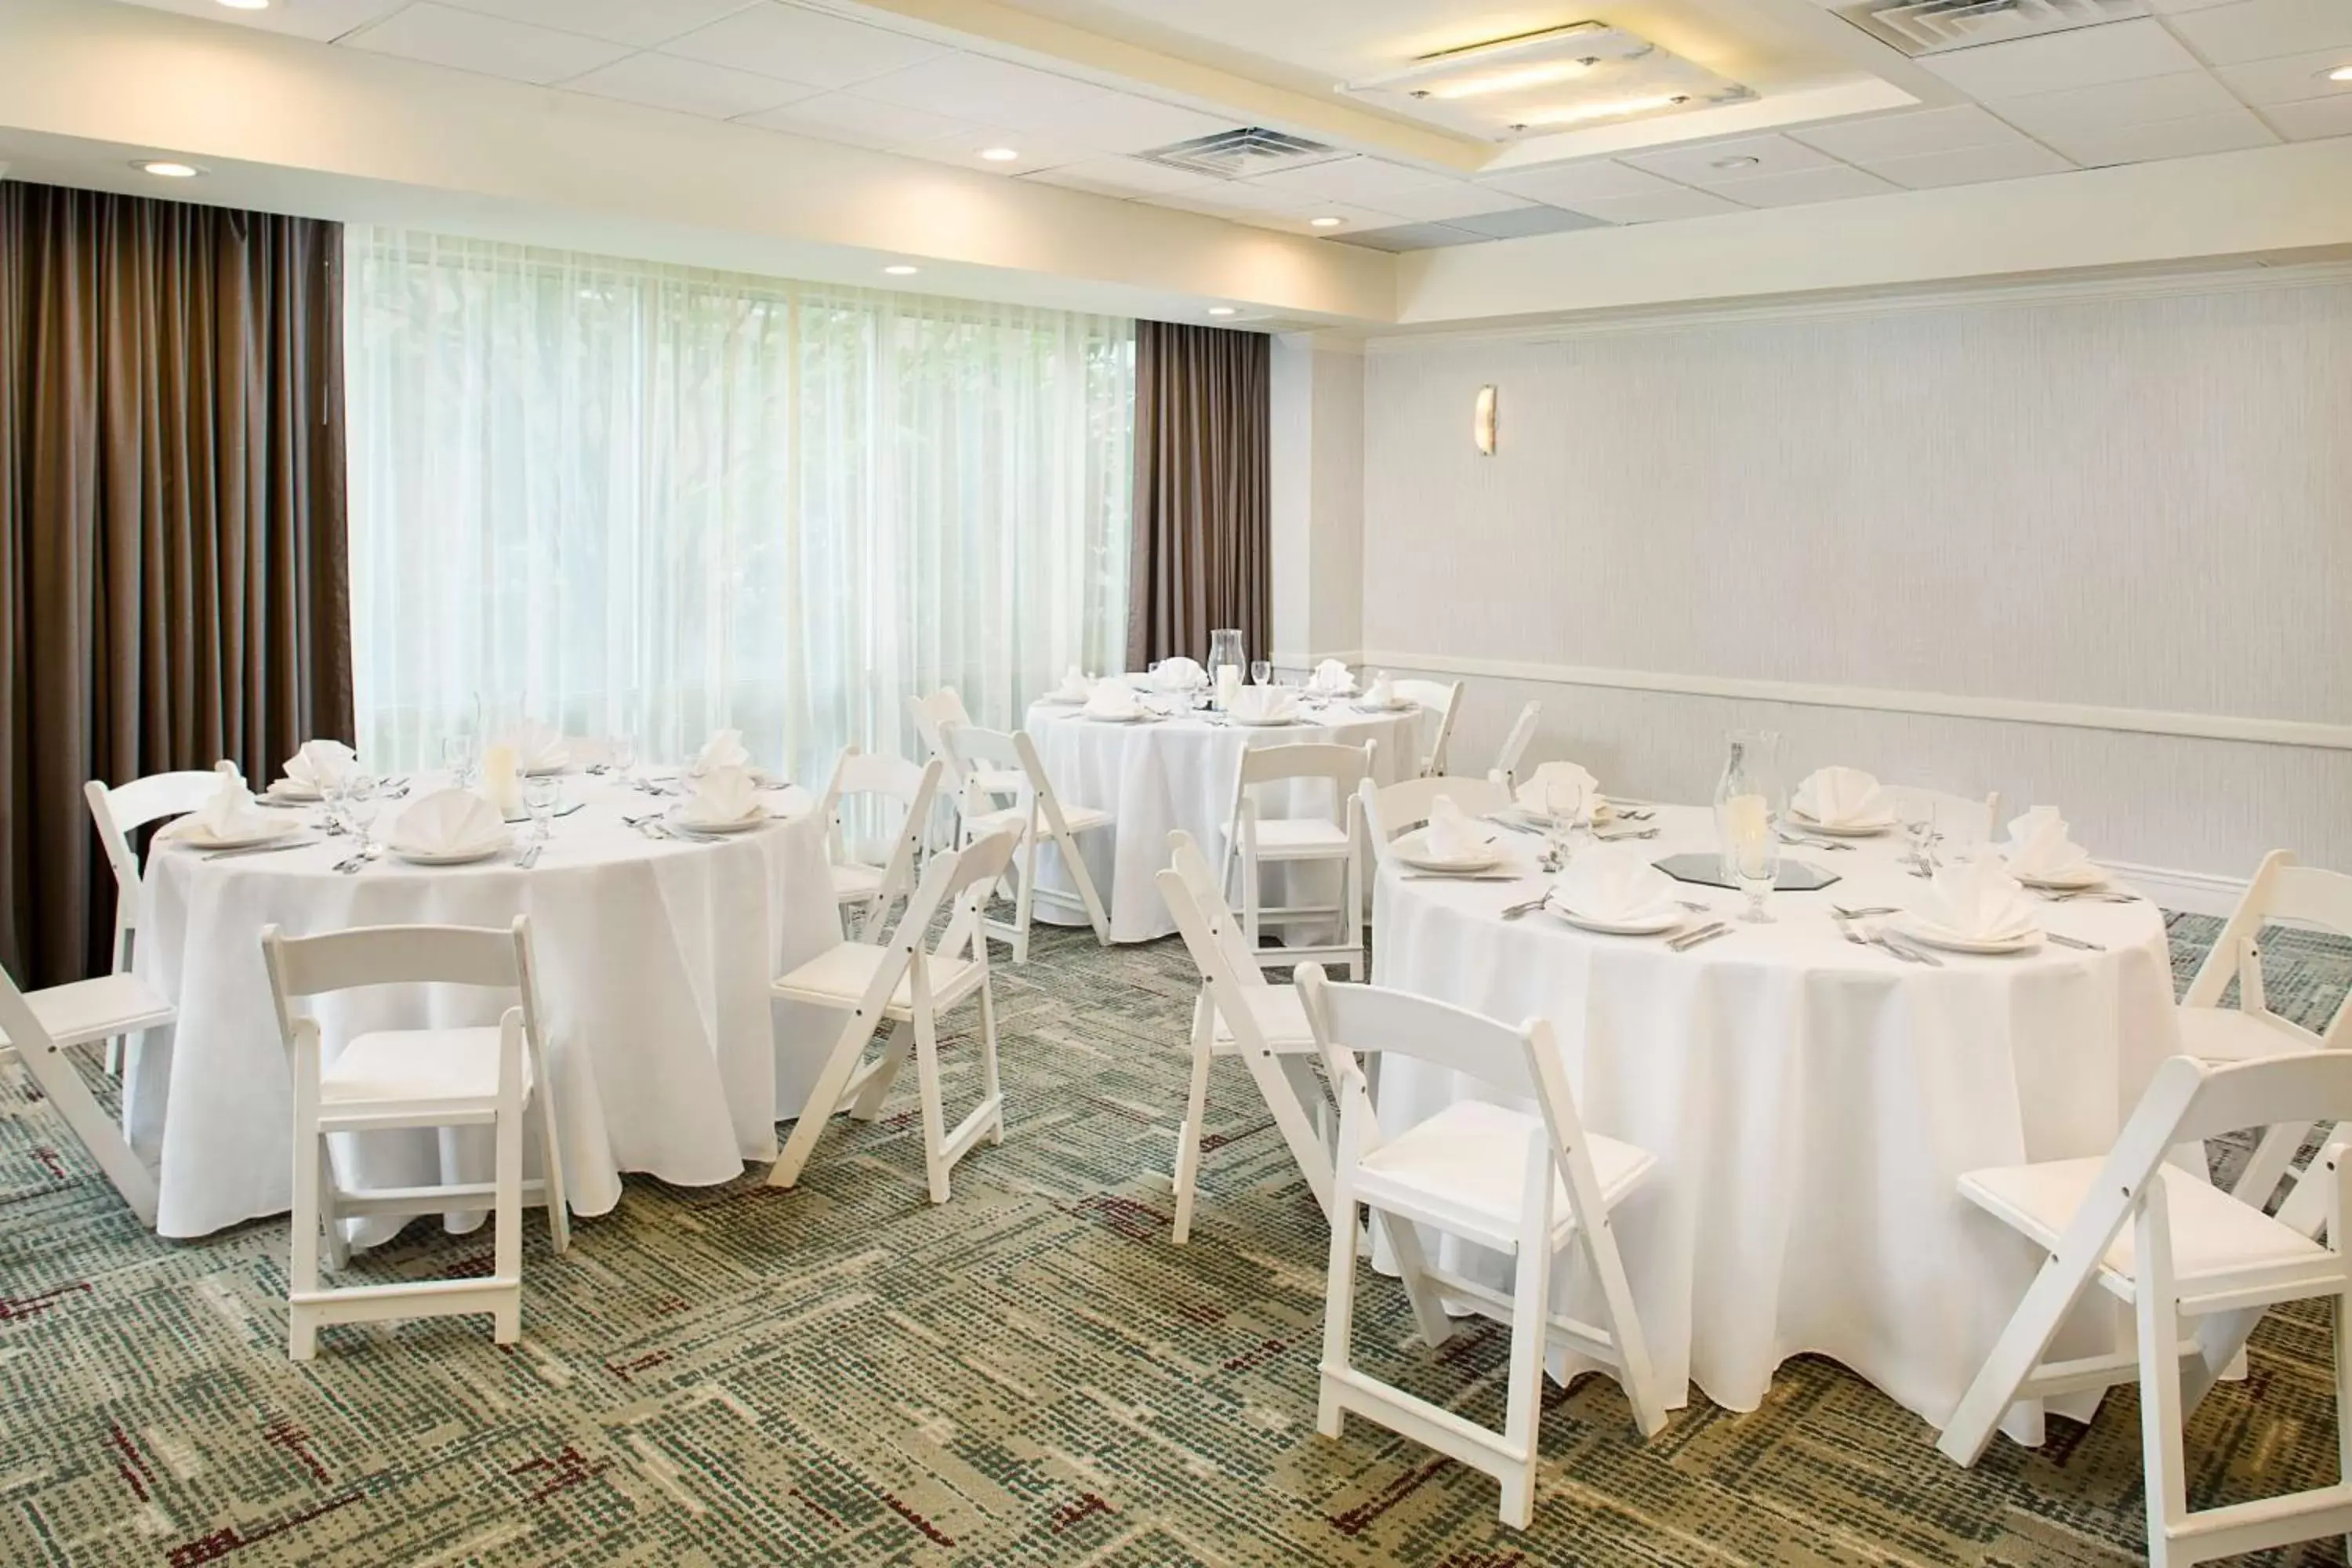 Meeting/conference room, Banquet Facilities in Hilton Atlanta Perimeter Suites